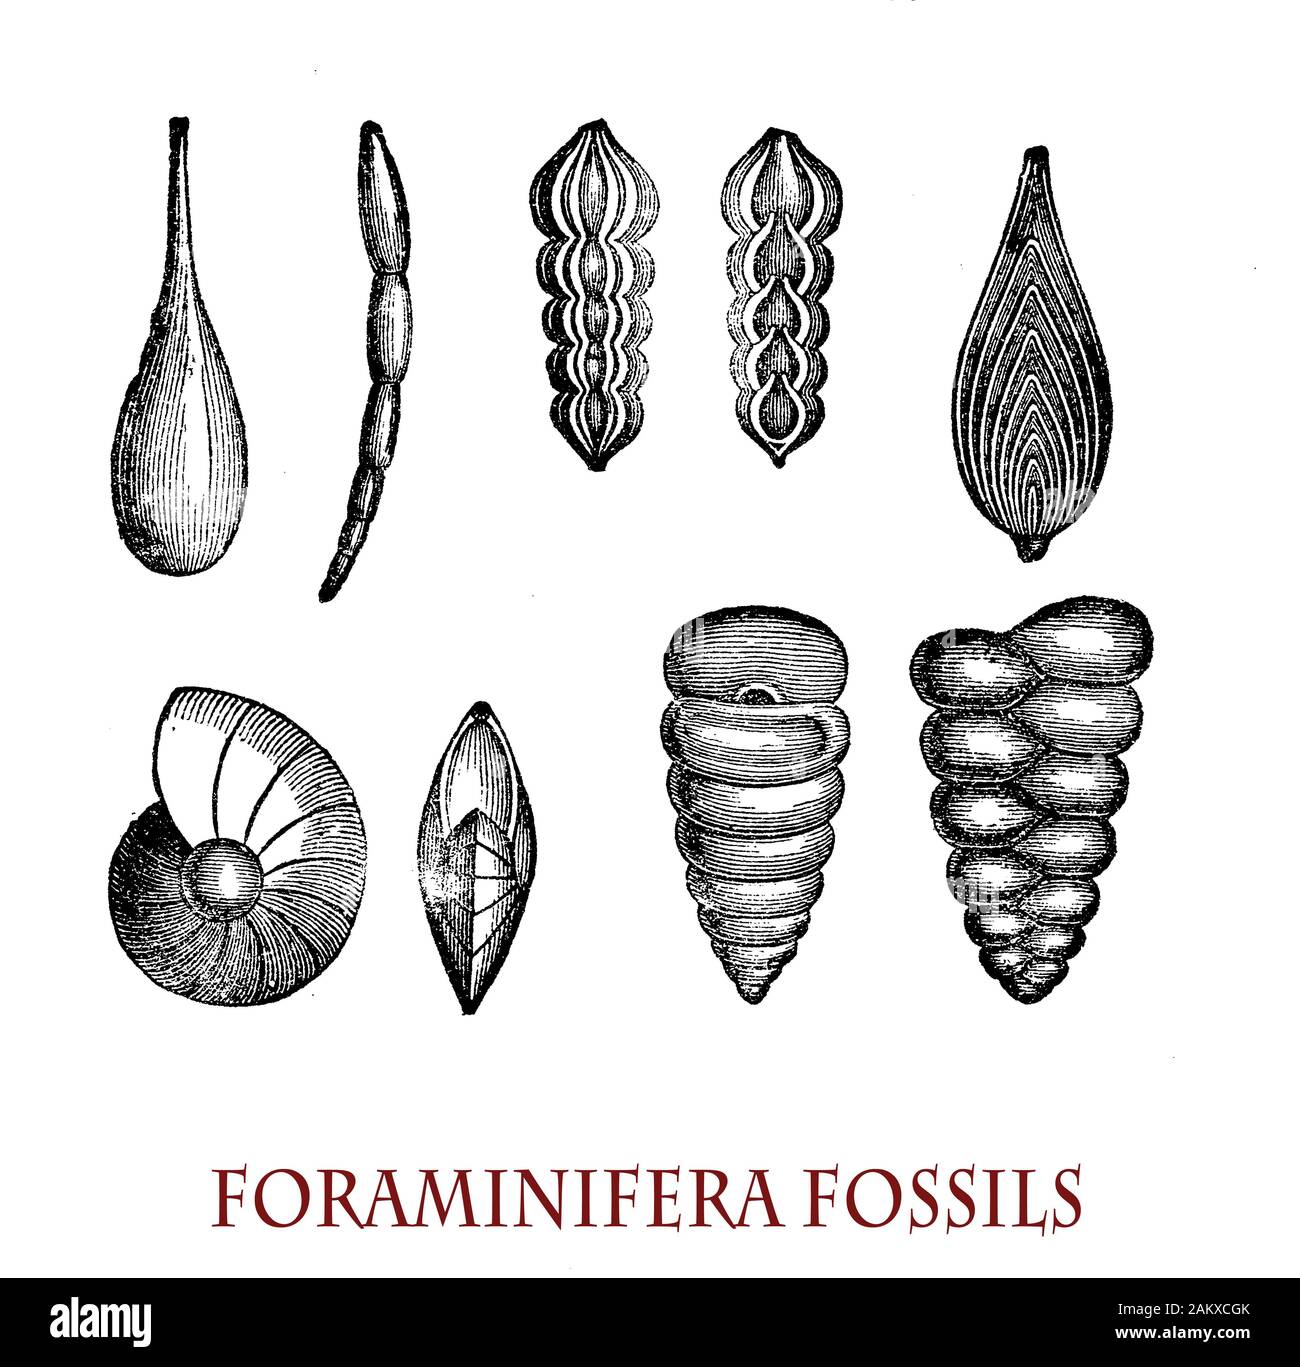 Foraminiferos fósiles organismo unicelular con estructura compleja que se remontan a mediados del Jurásico, excepcionalmente útil en bioestratigrafï dar fechas con precisión relativa a las rocas sedimentarias Foto de stock